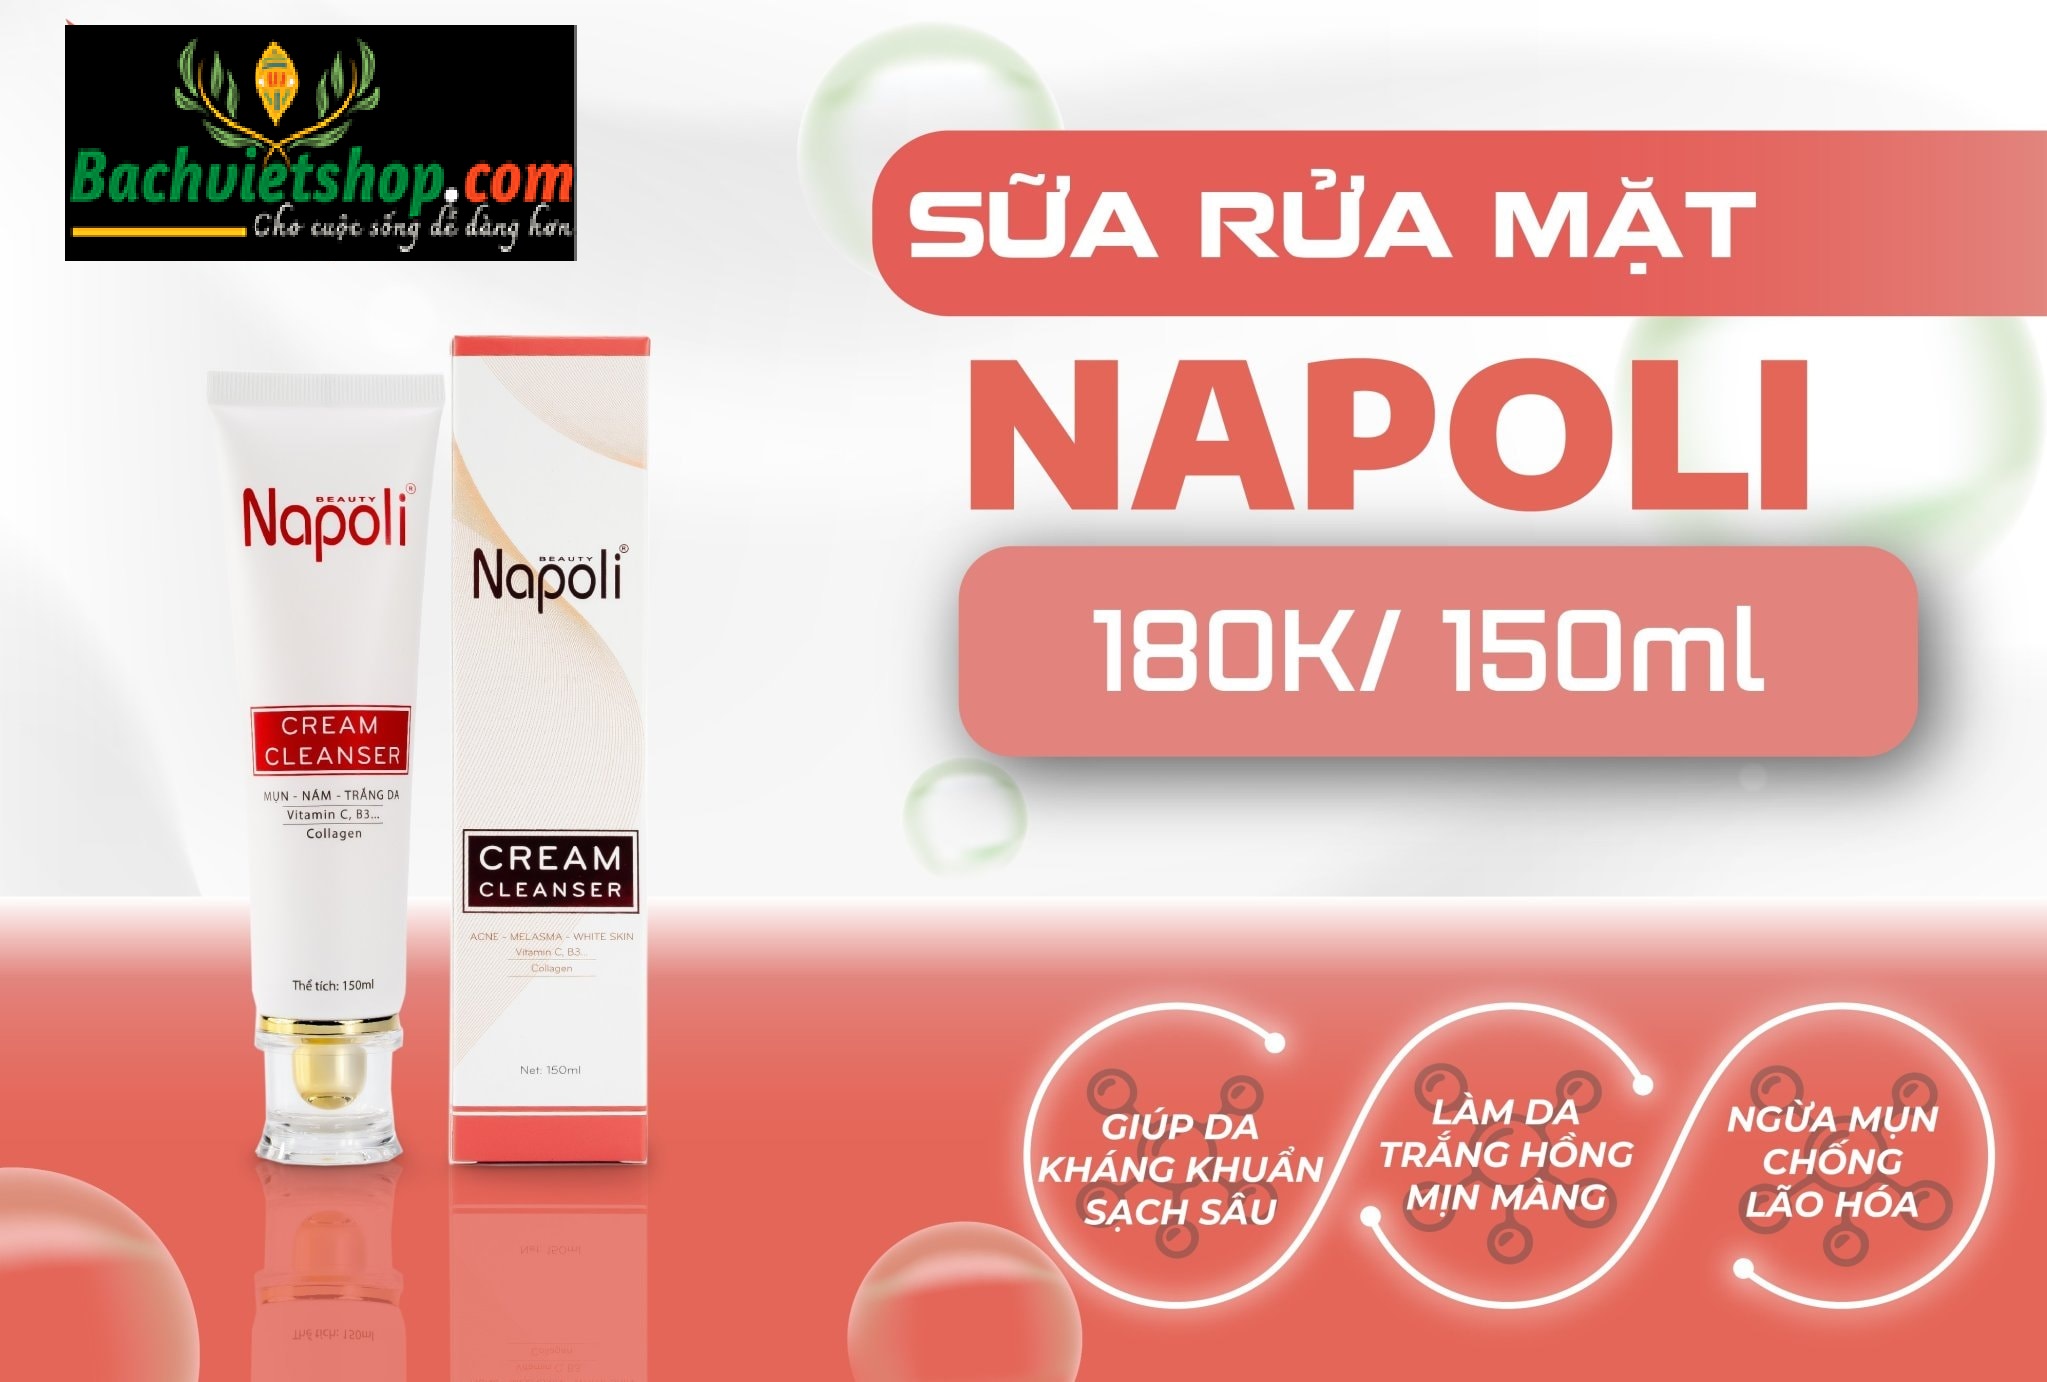 Kem rửa mặt Napoli được chiết xuất 100% từ những thành phần thiên nhiên an toàn, lành tính và phù hợp với mọi loại da!